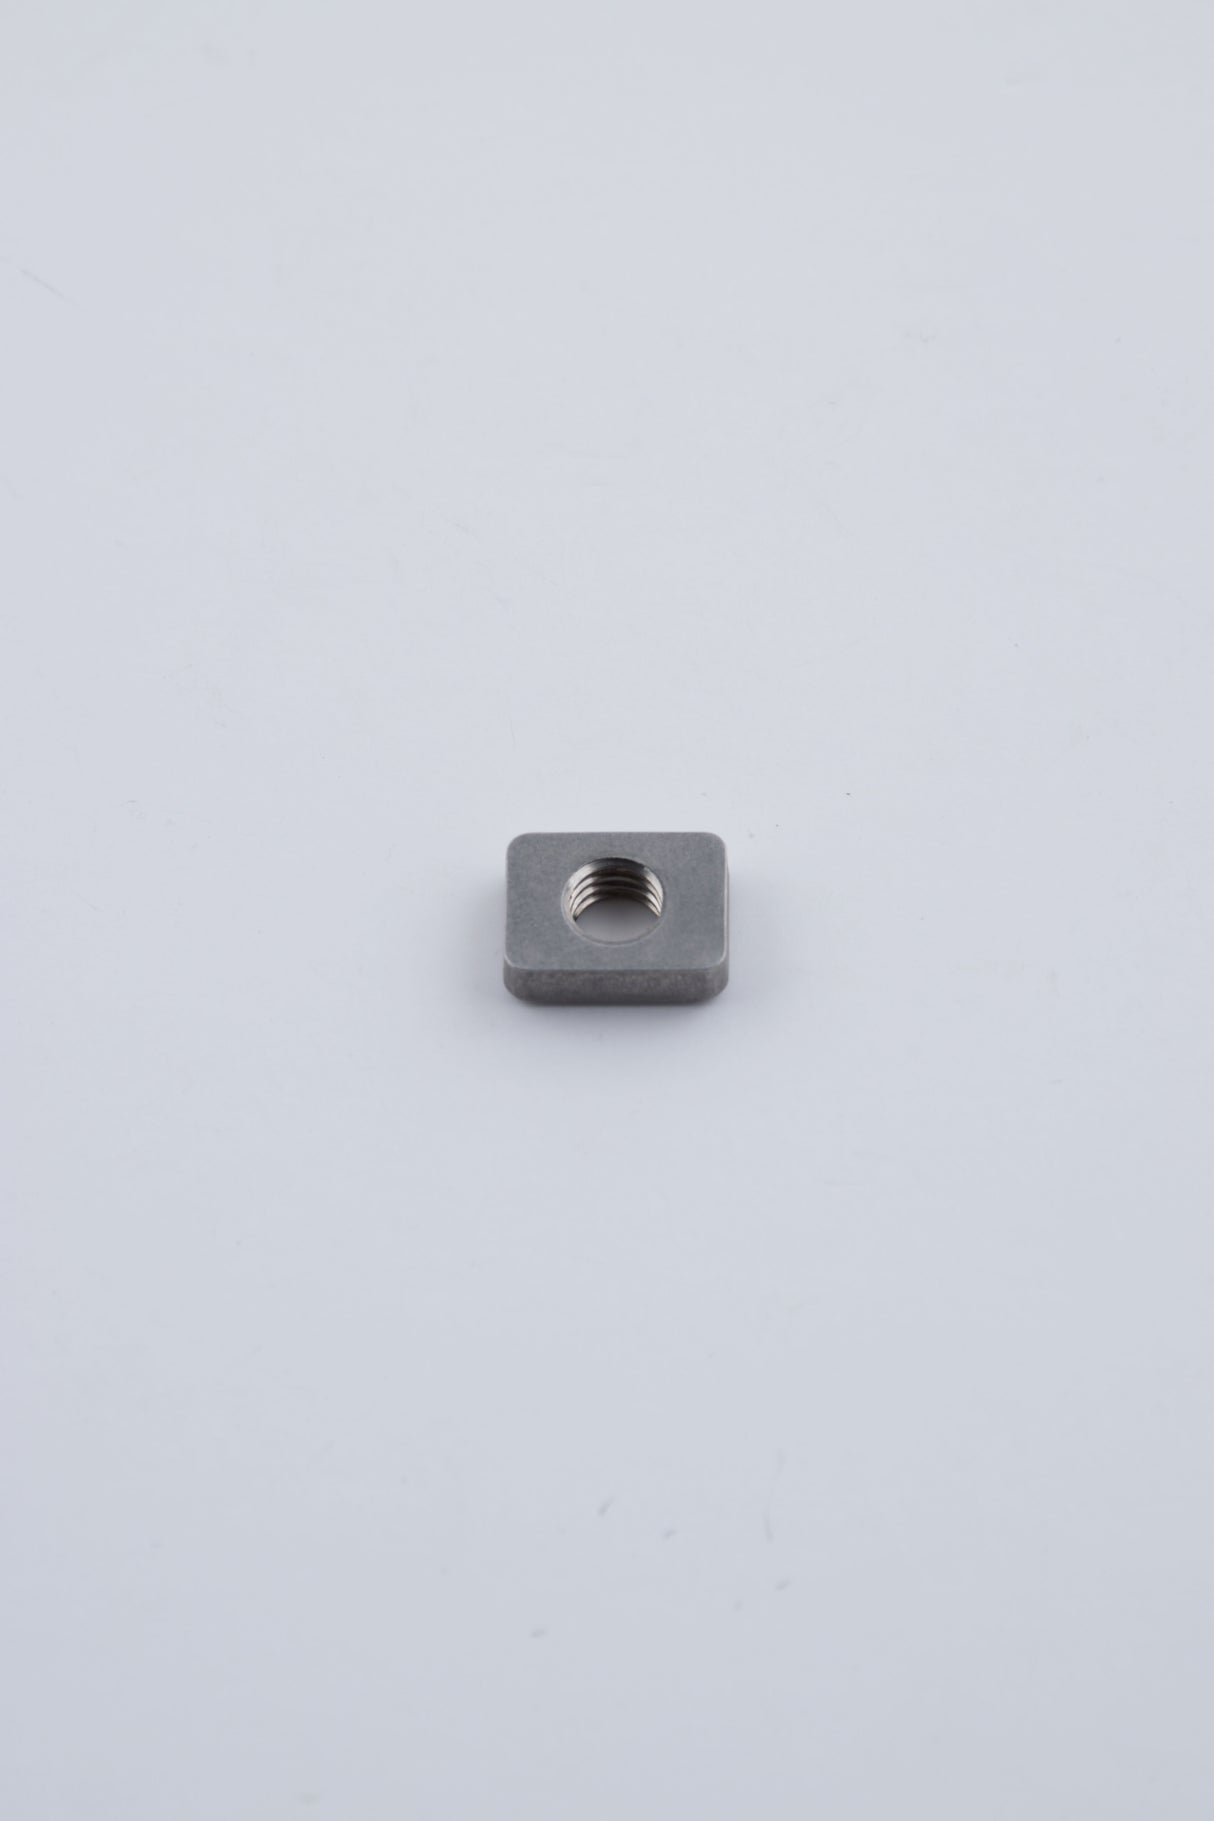 Yamaha 90173-06001-00 - Nut, square